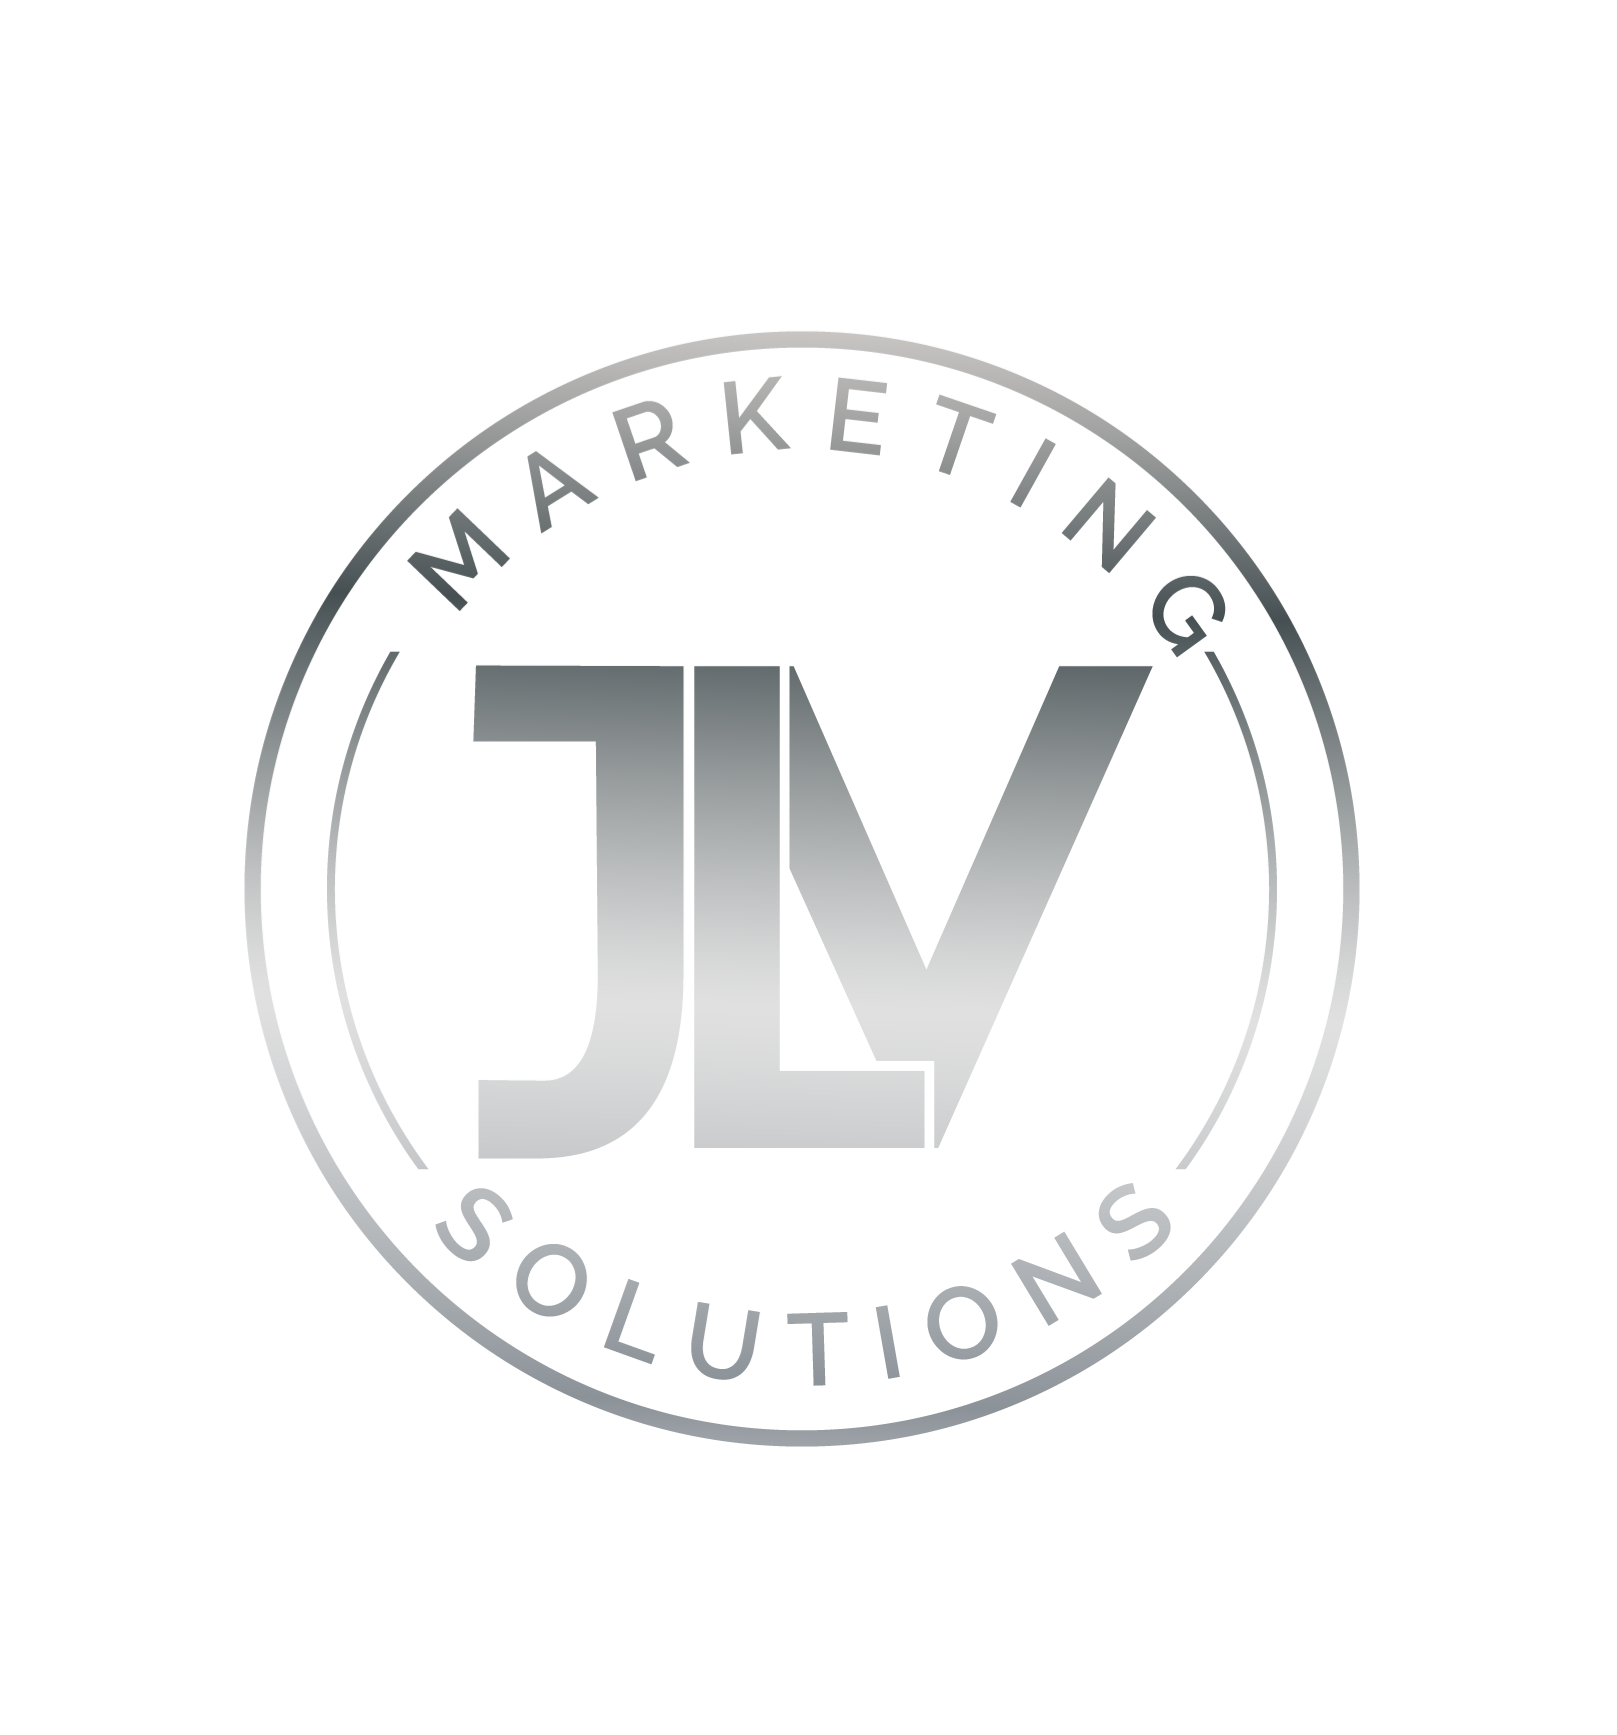 JLV marketing solutions